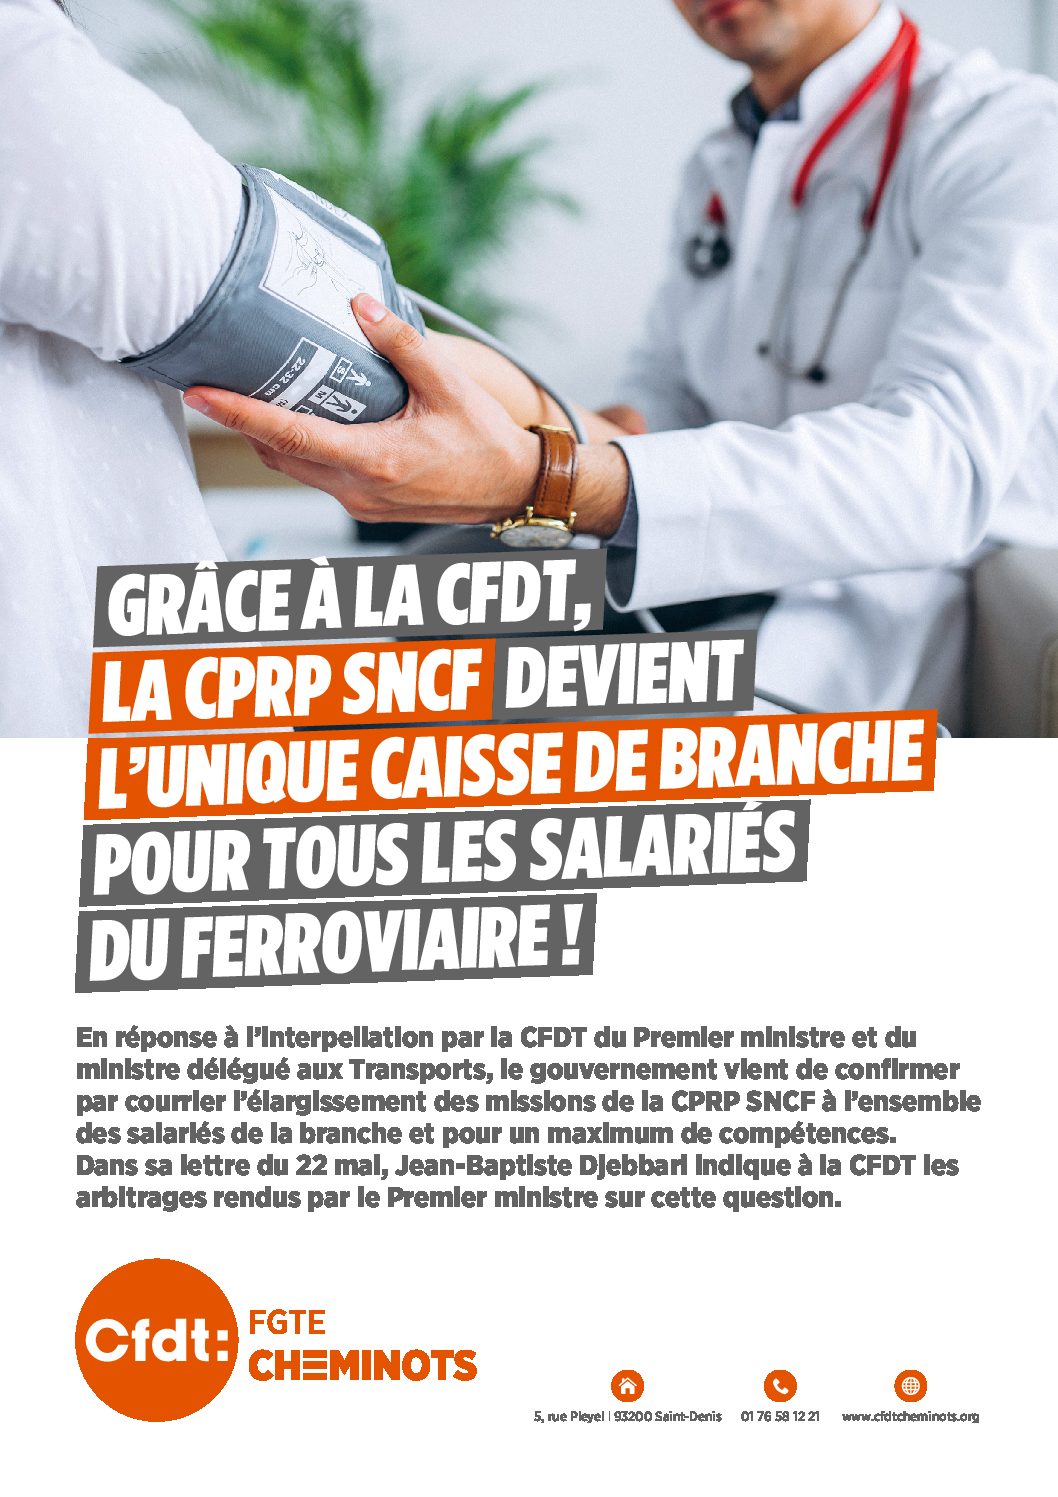 CPRP, CAISSE DE BRANCHE